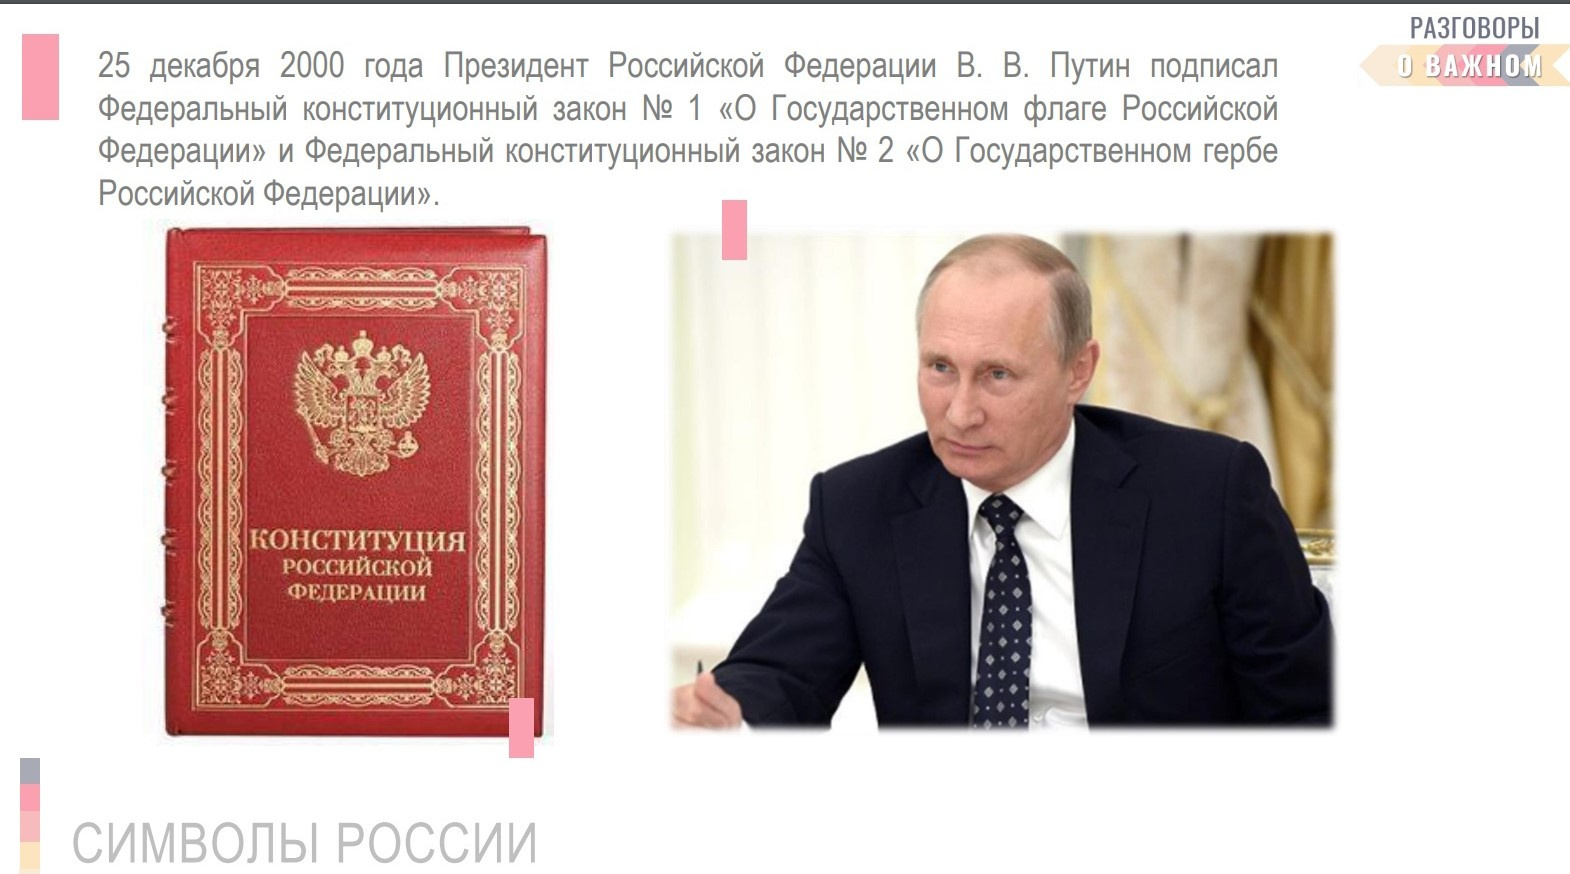 Ребятам говорят, что 25 декабря 2000 года президент подписал законы «О Государственном флаге РФ» и «О Государственном гербе РФ»